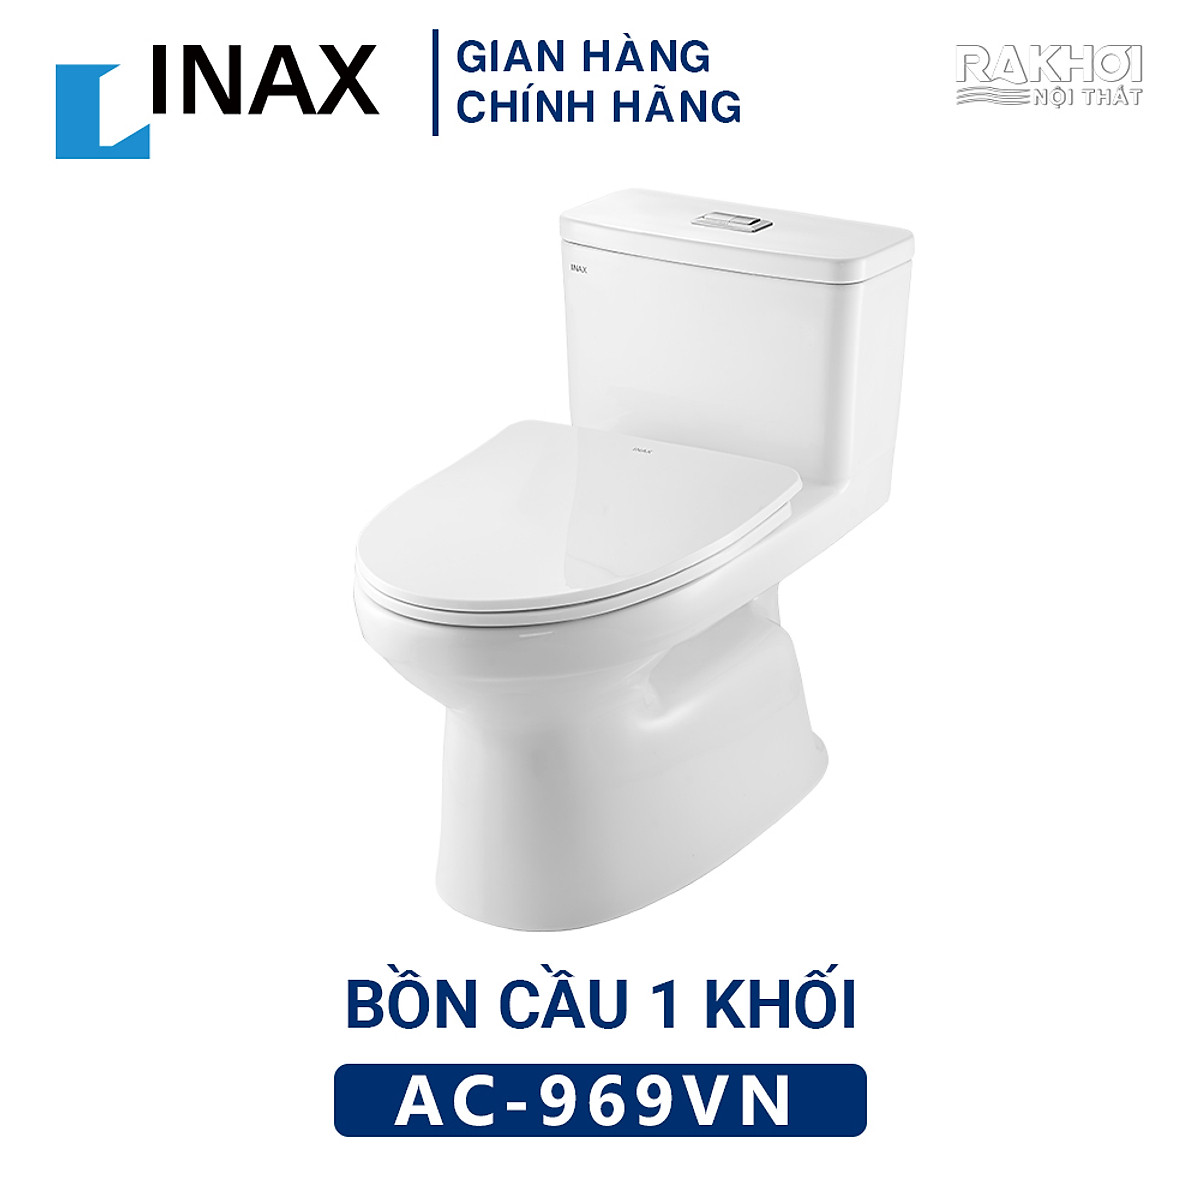 Bàn cầu Inax có thiết kế độc đáo, chất lượng đảm bảo và tiện nghi hoàn hảo sẽ là lựa chọn tuyệt vời cho căn phòng tắm của bạn. Đừng bỏ lỡ cơ hội để nâng cấp phòng tắm của bạn bằng cách chọn bàn cầu Inax.